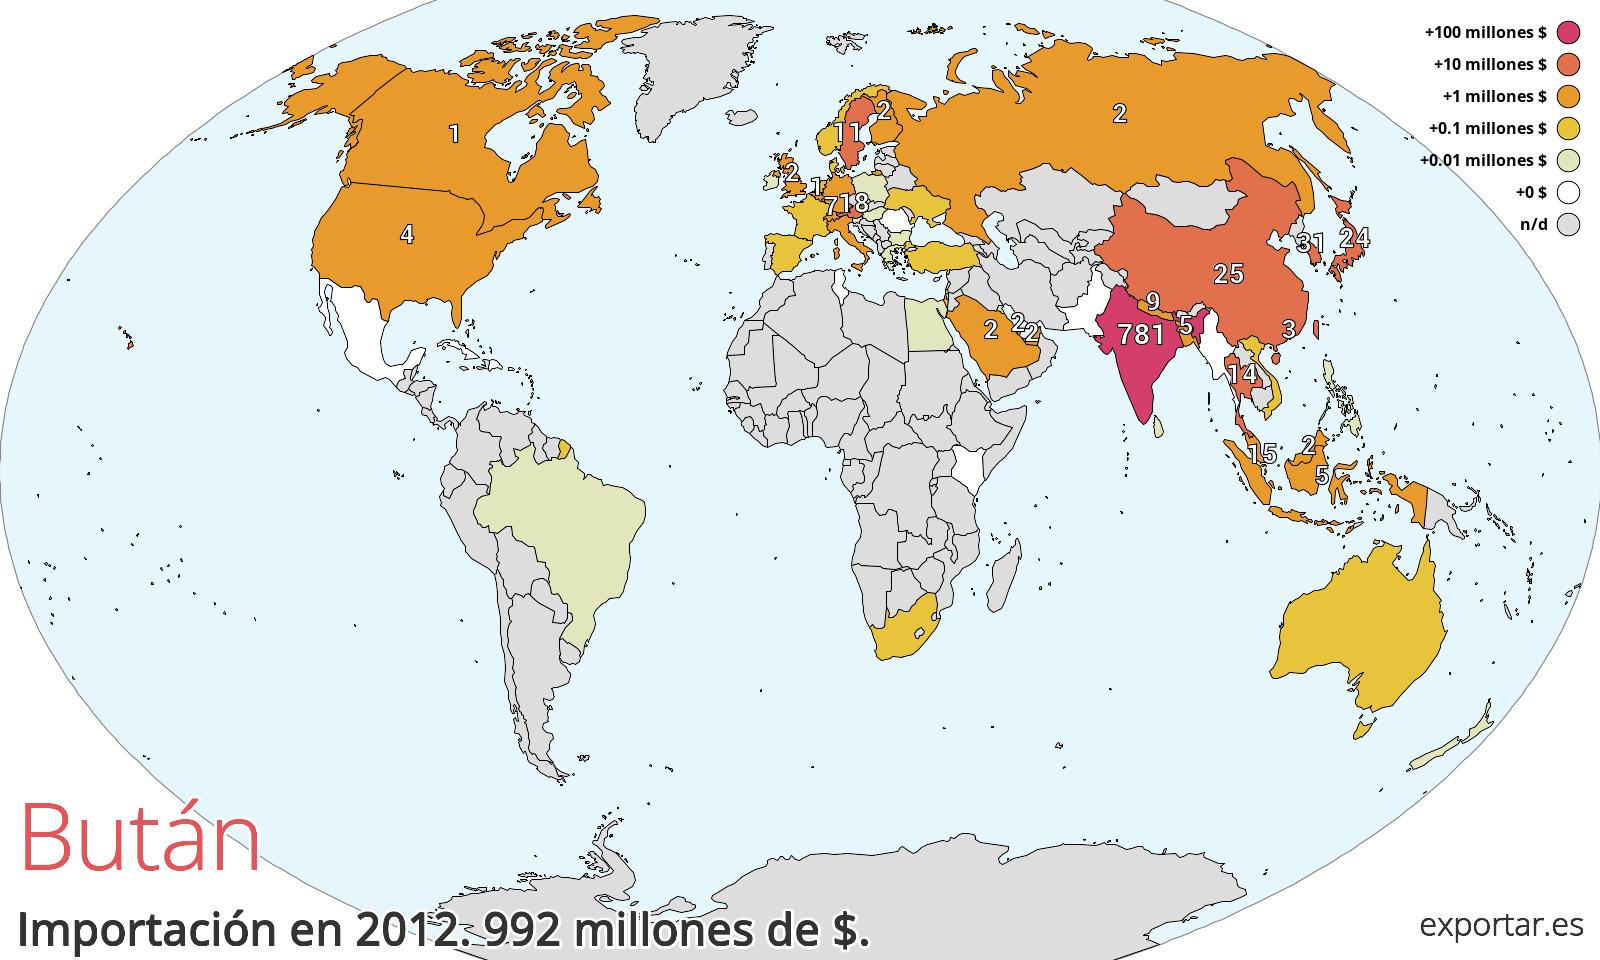 Mapa de importación de Bután en 2012.